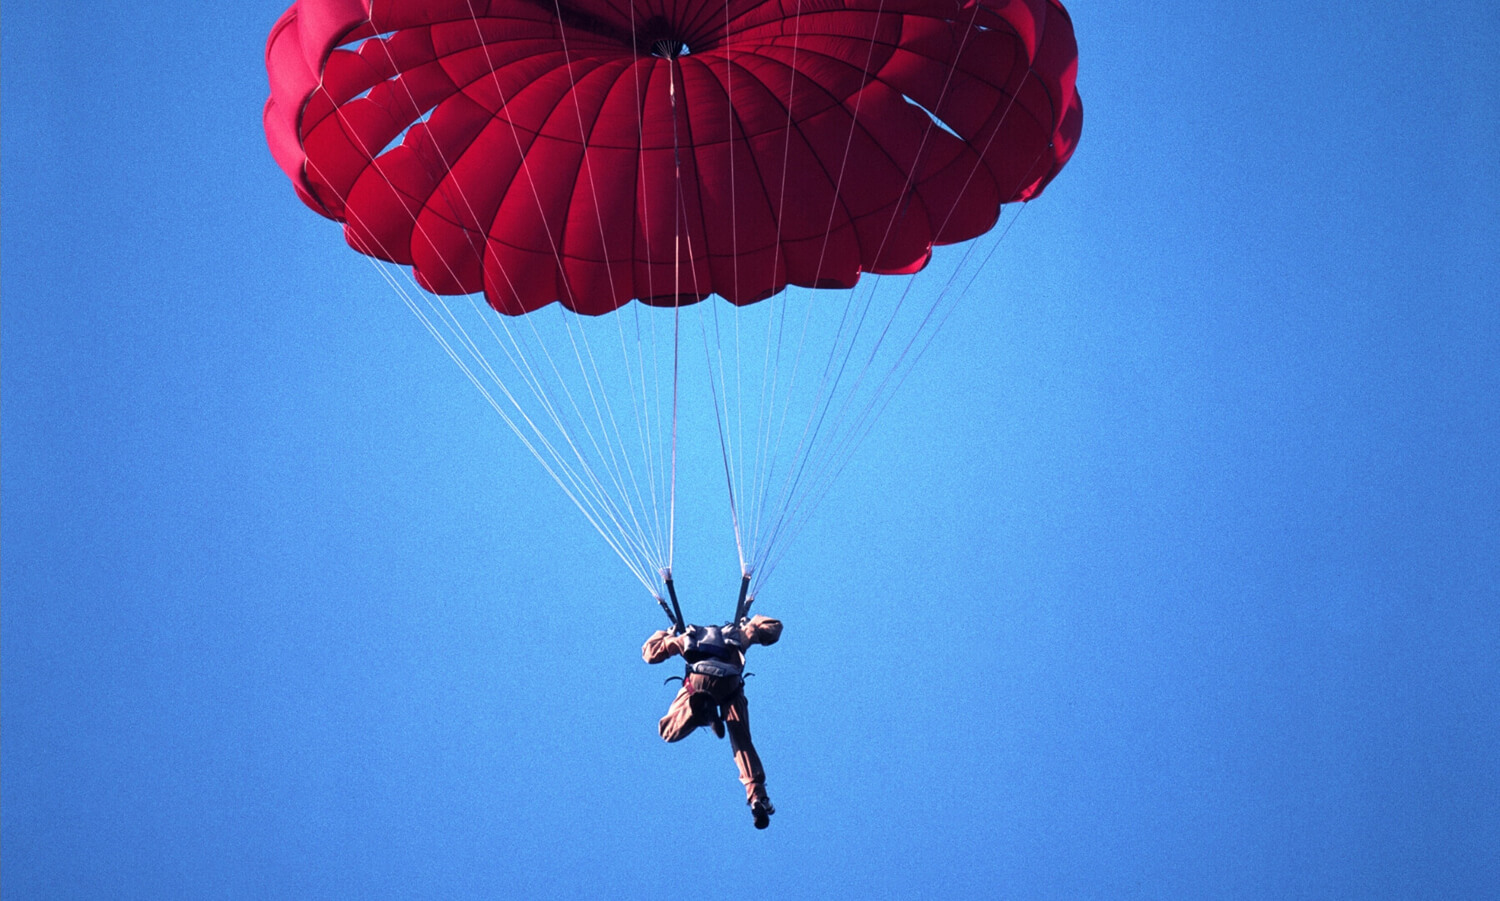 La leadership é uno sport estremo come il lancio da paracadute. Quanto sei allenato?